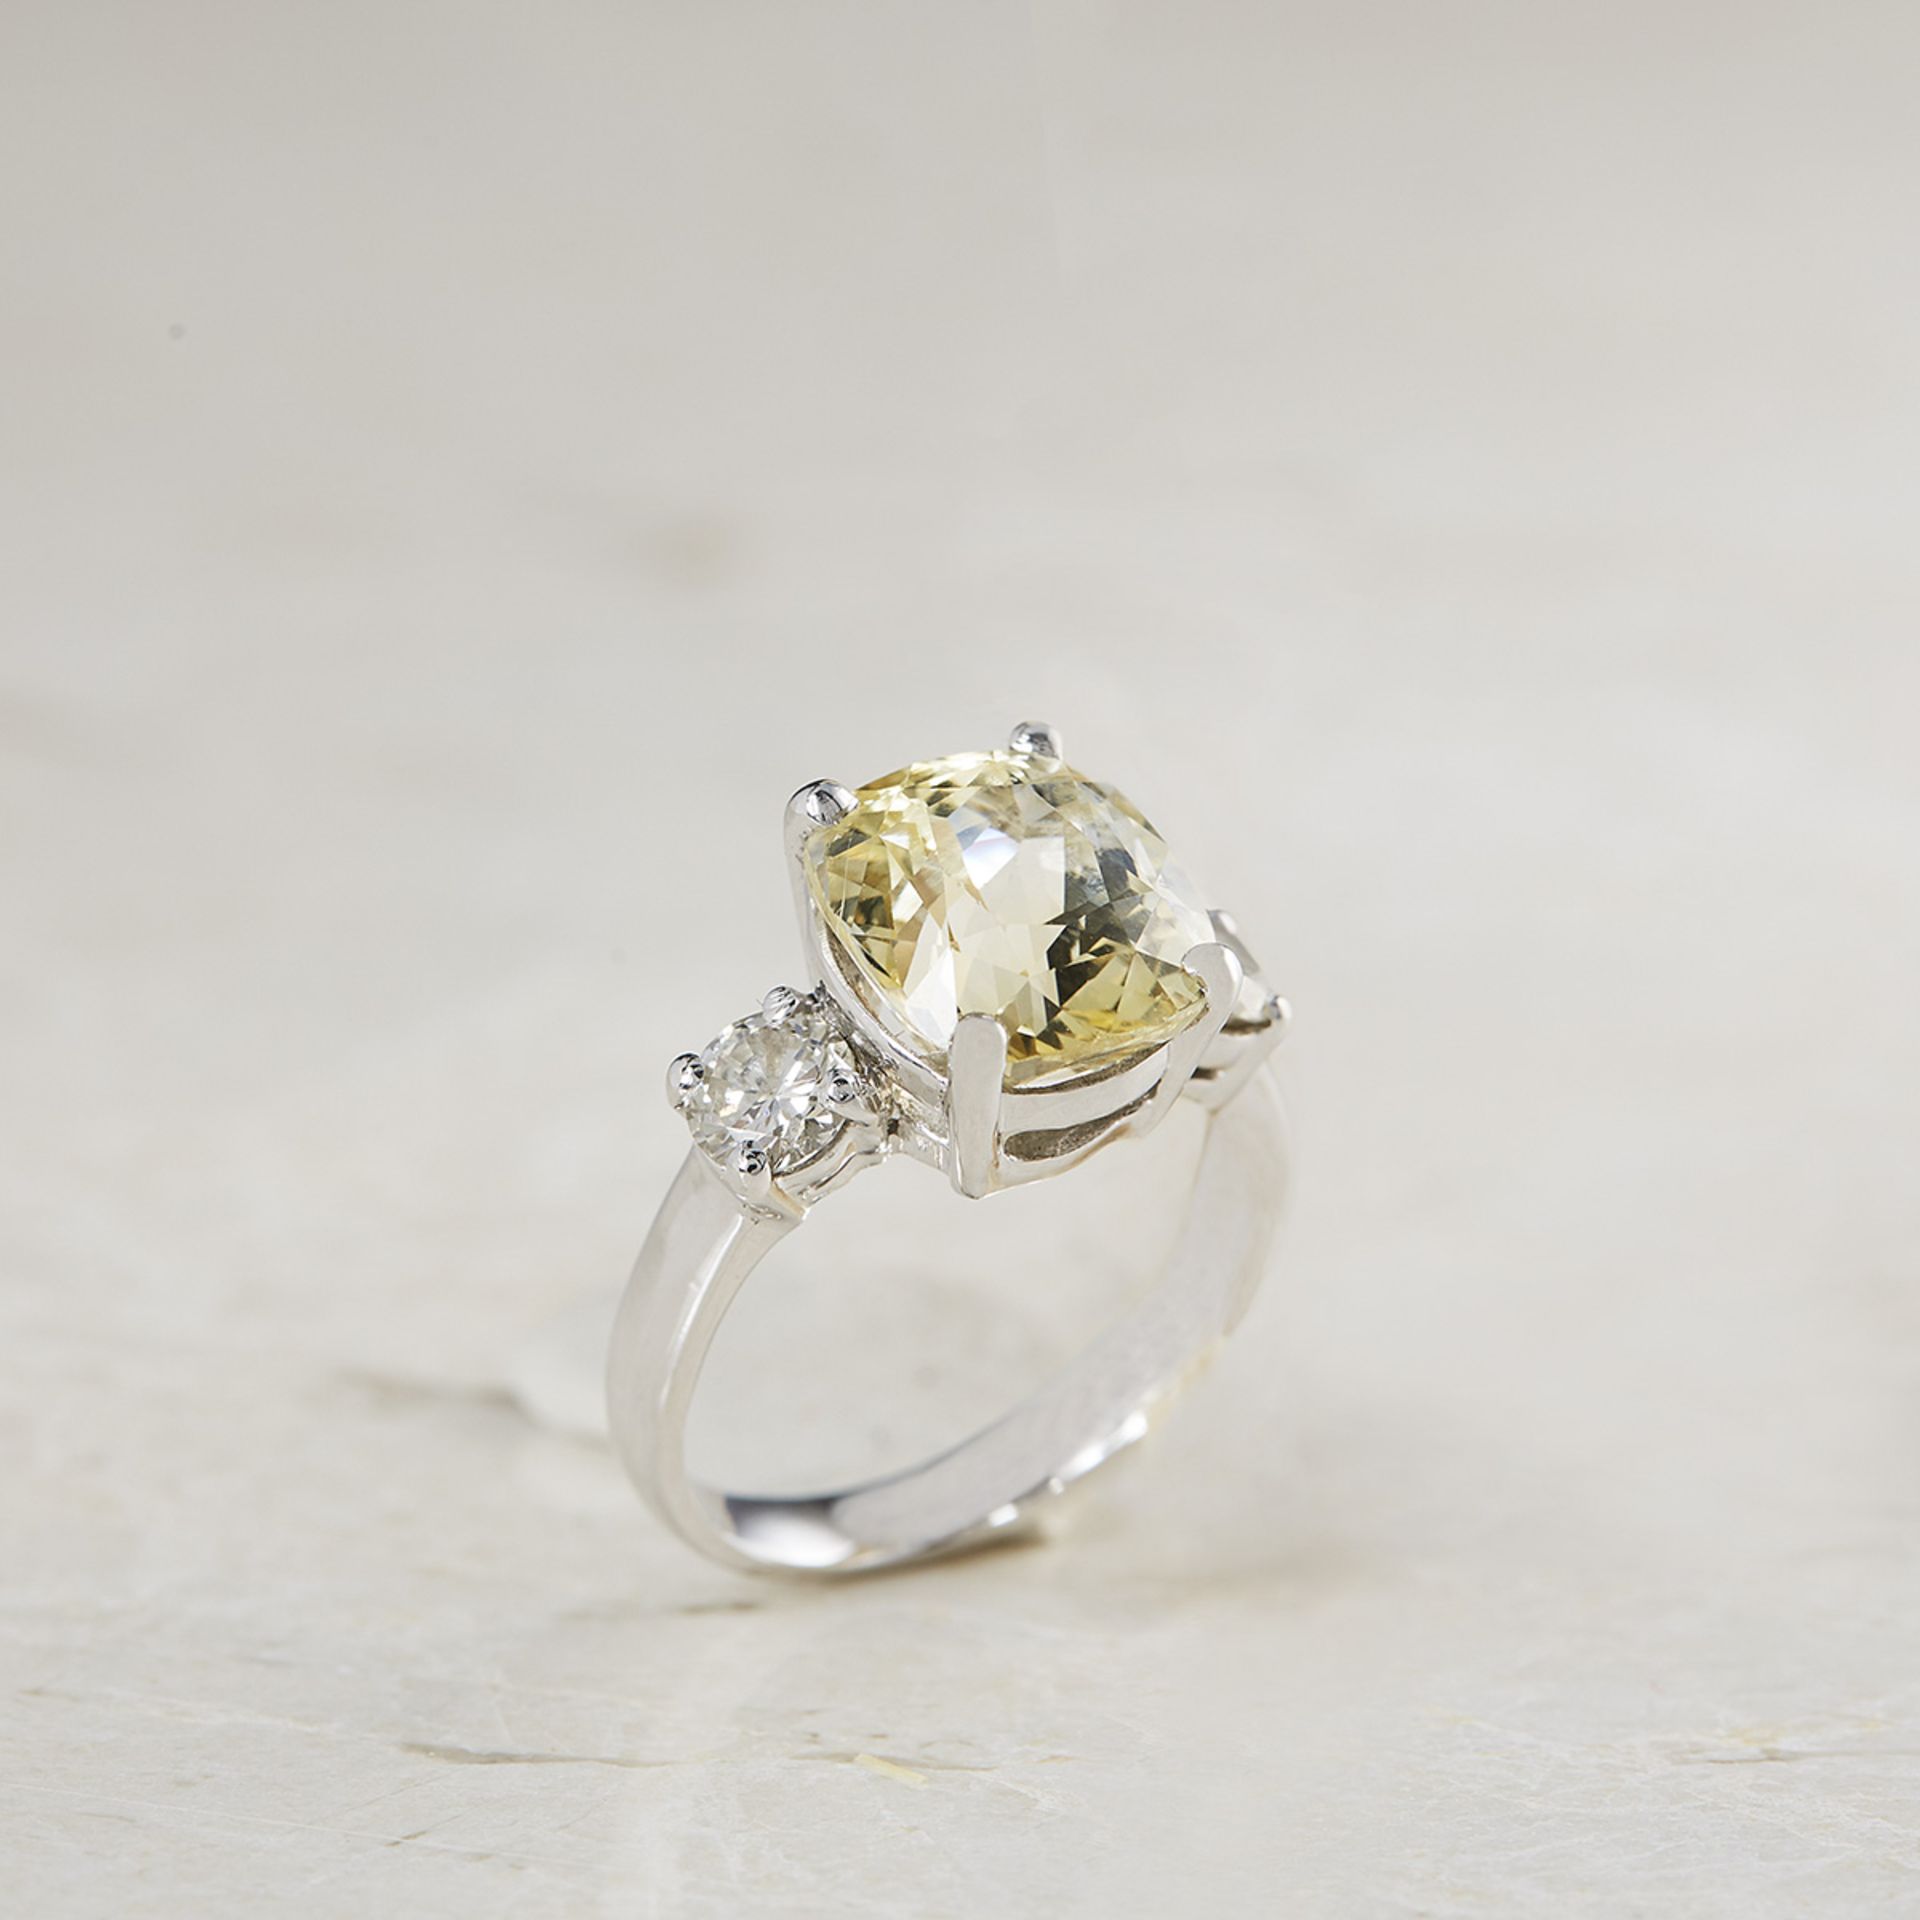 Platinum 6.07ct Yellow Sapphire & 0.68ct Diamond Ring - Image 2 of 8